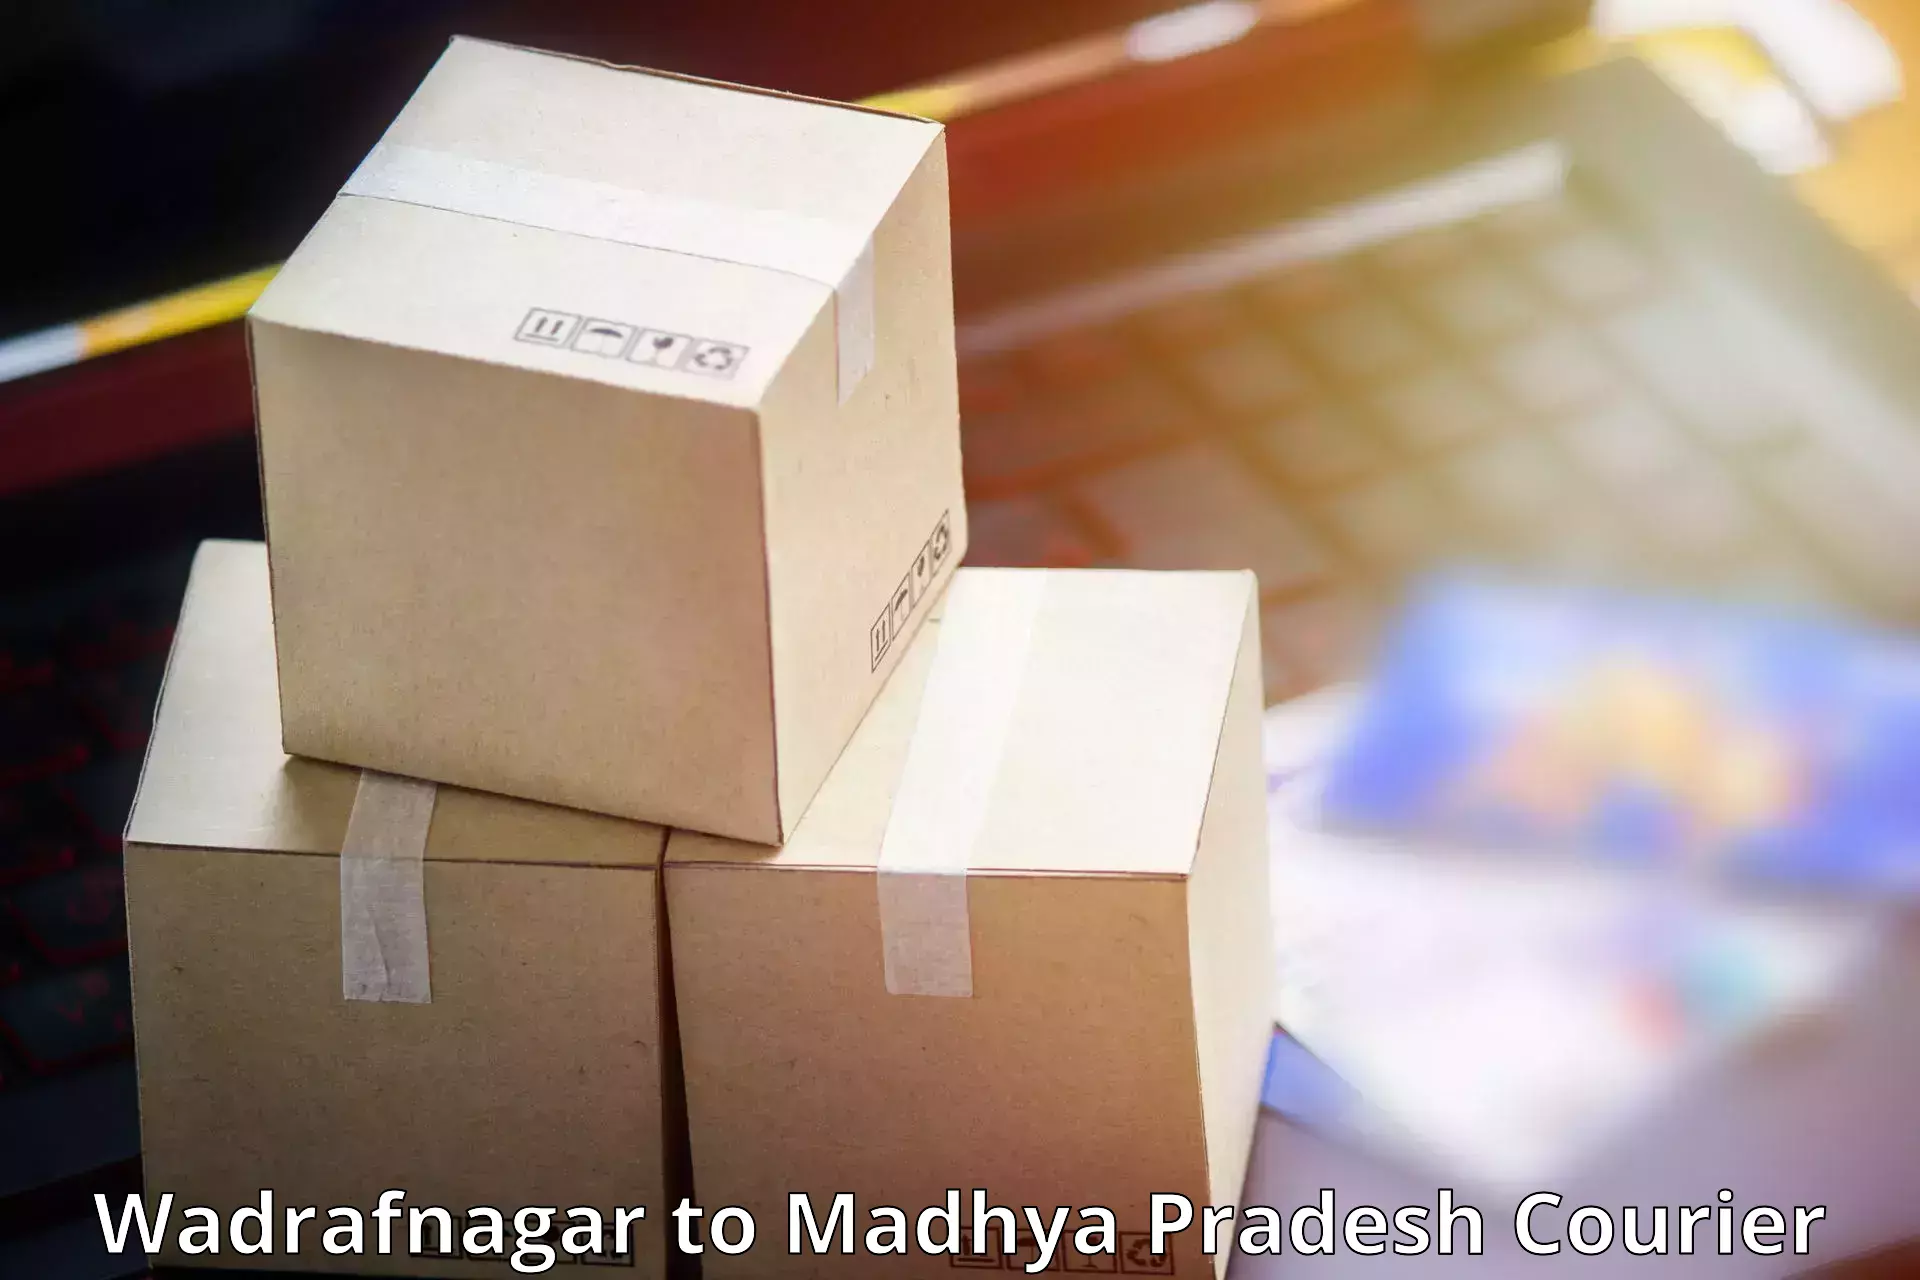 Fragile item shipping Wadrafnagar to Madhya Pradesh